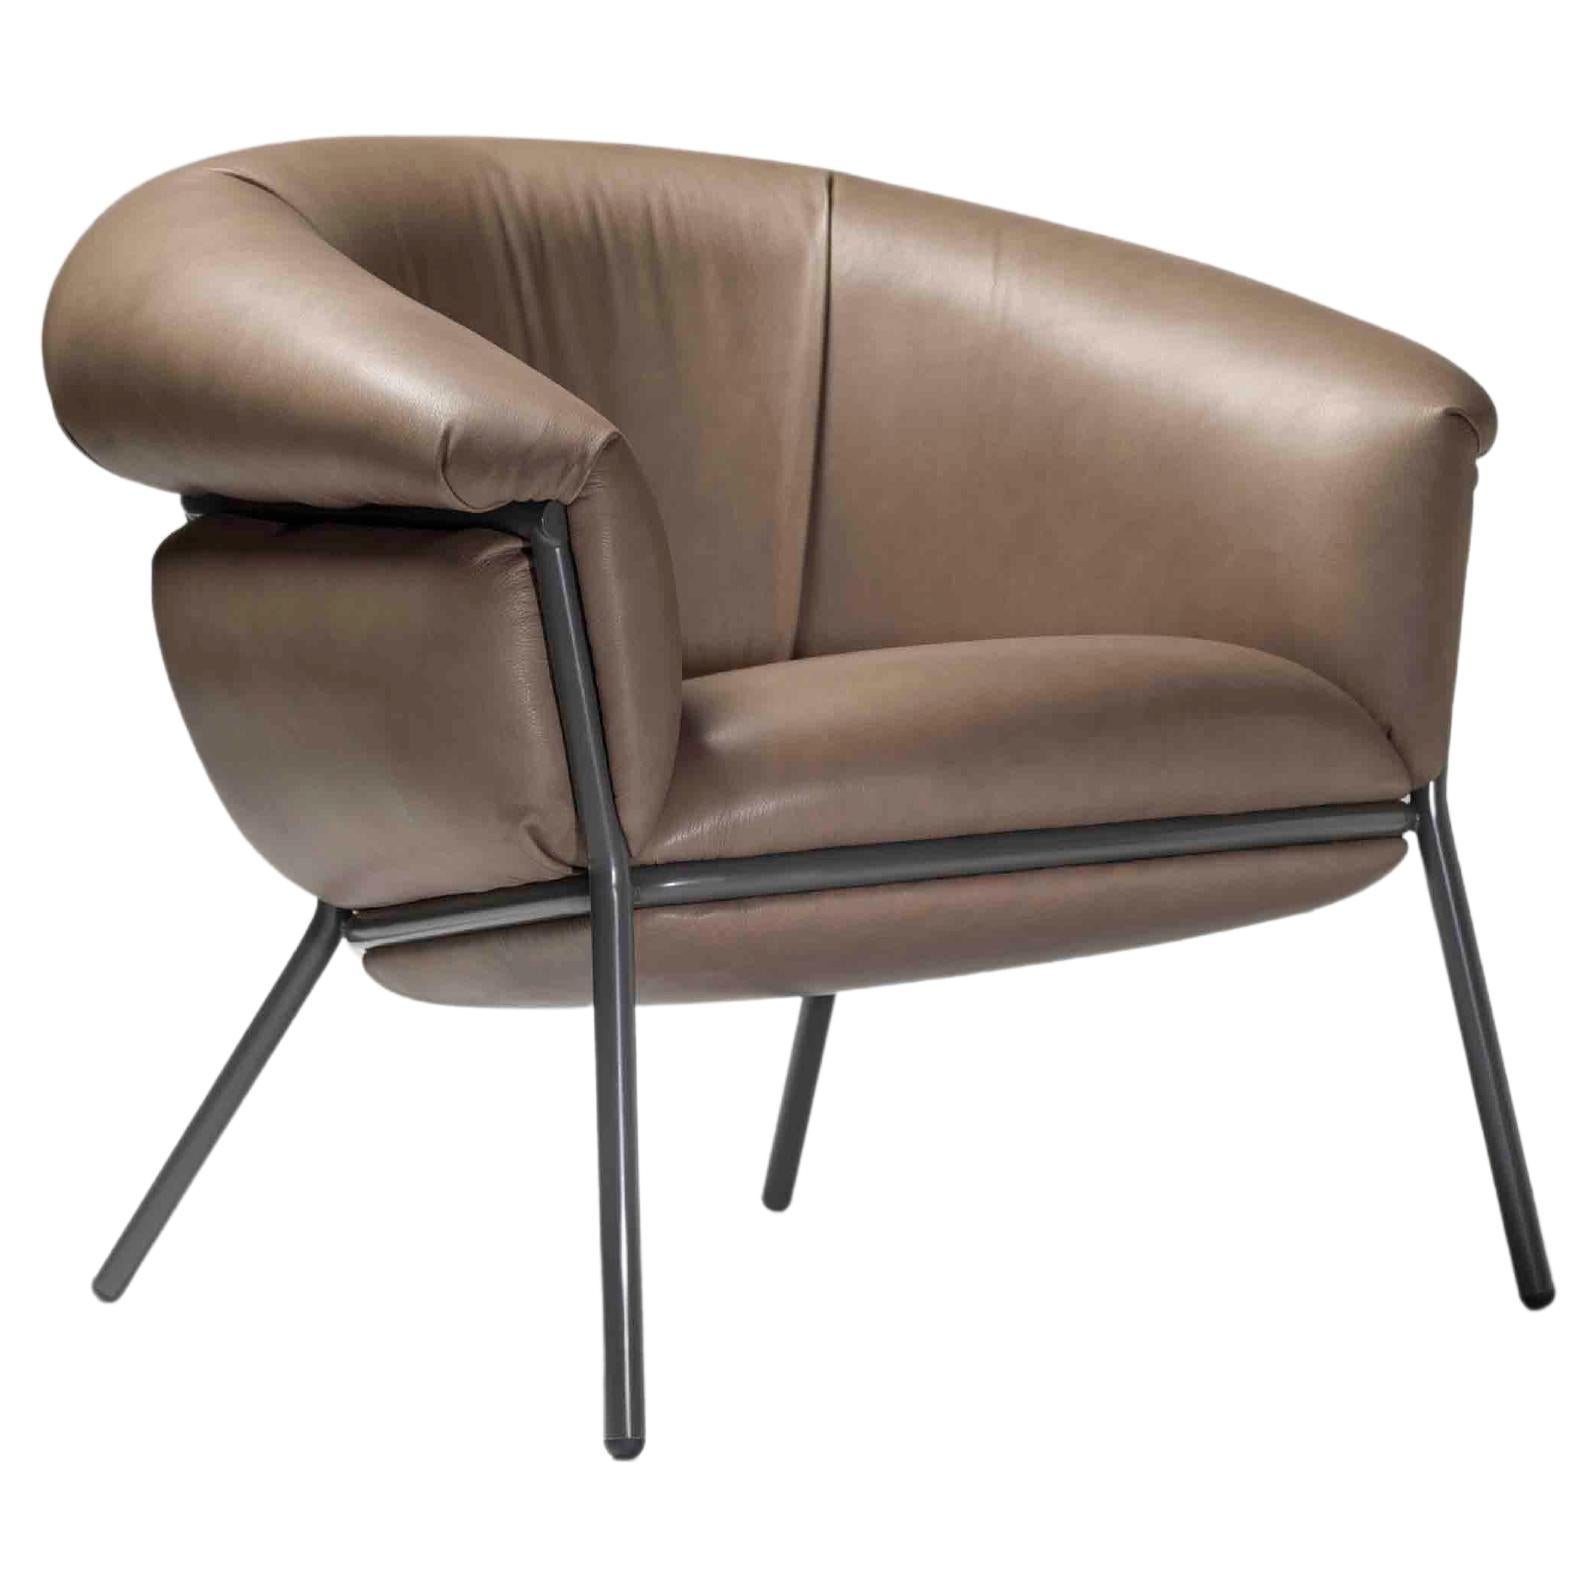 Grasso armchair by Stephen Burks blassbraunes lehmleder mit brauner stuktur